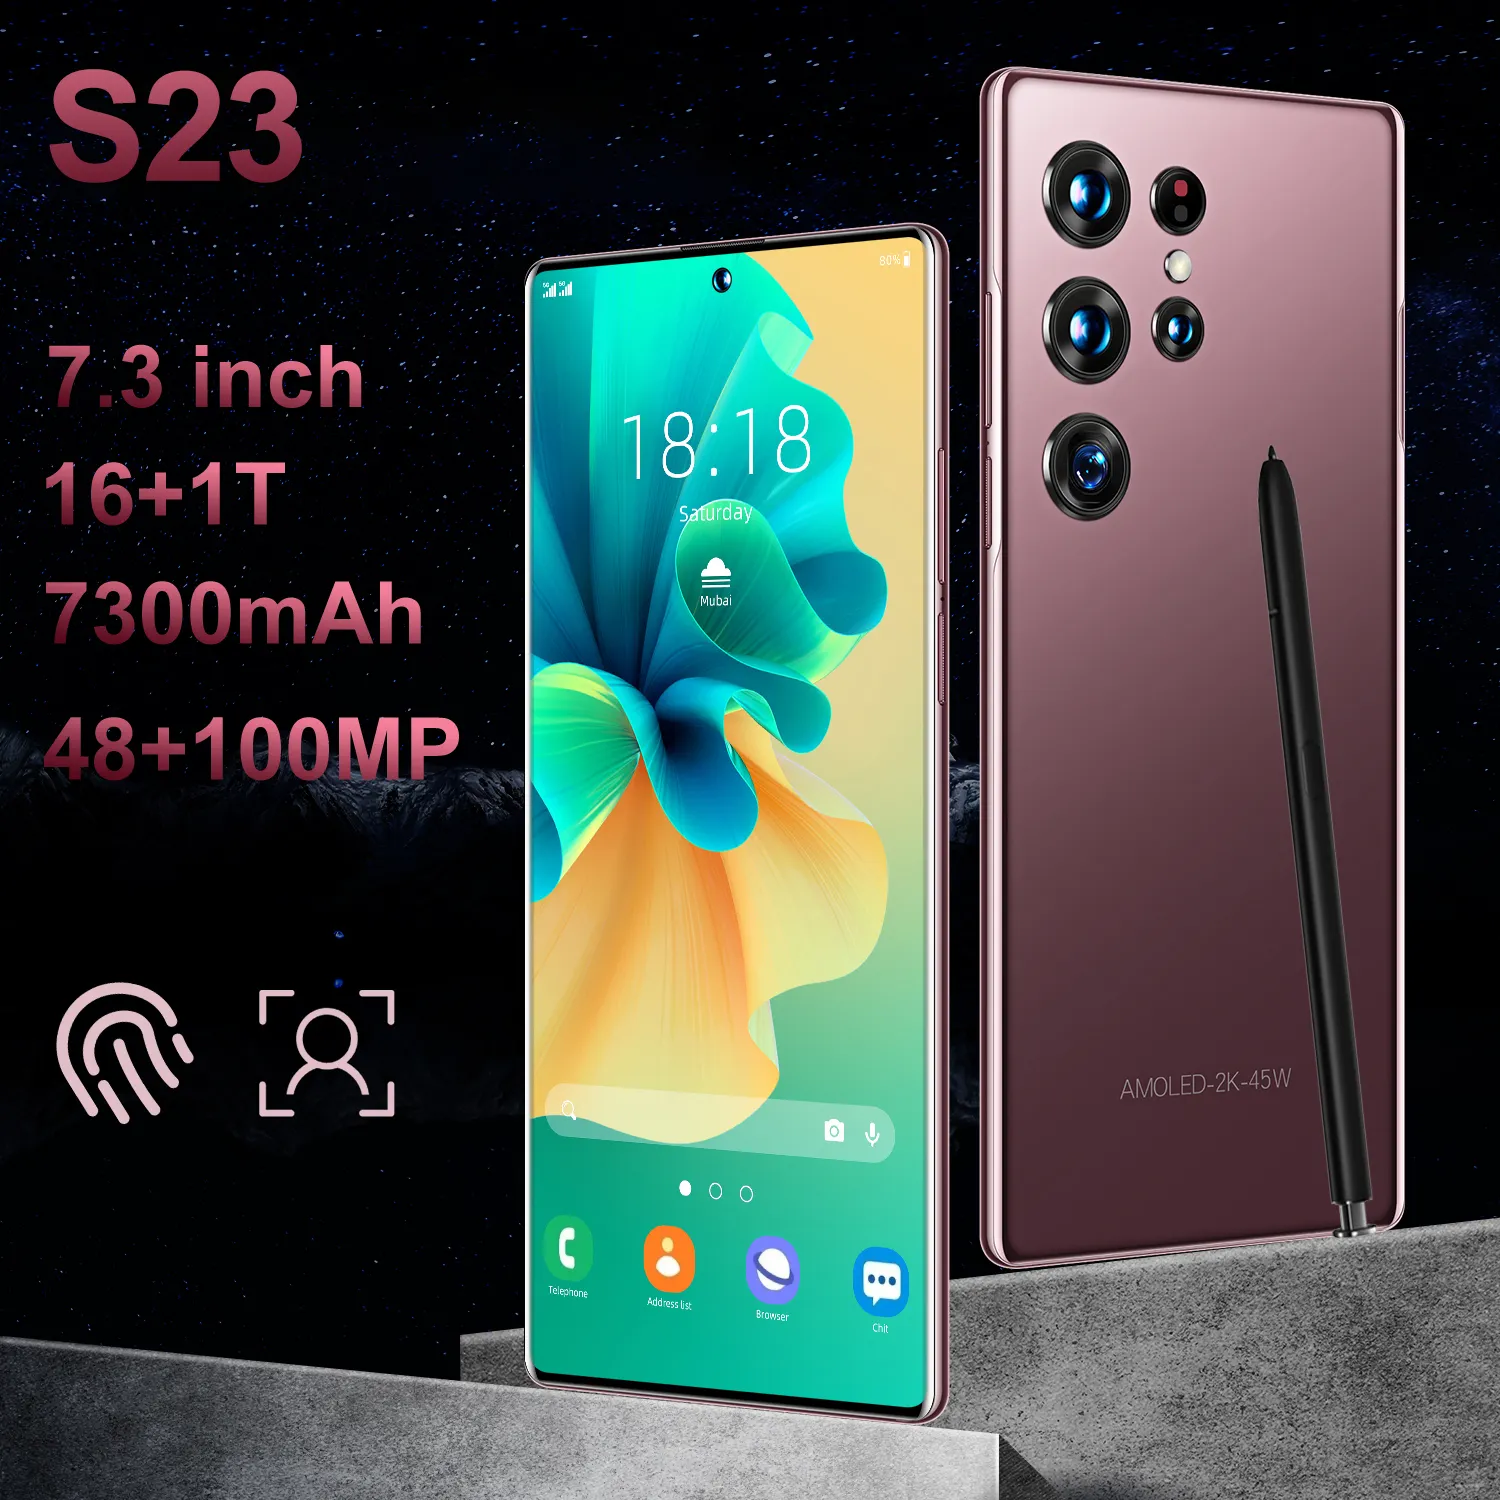 Alta qualidade comerciante supply chain integração móvel atacado s23 ultra telefone para samsung galaxy 5g smartphone